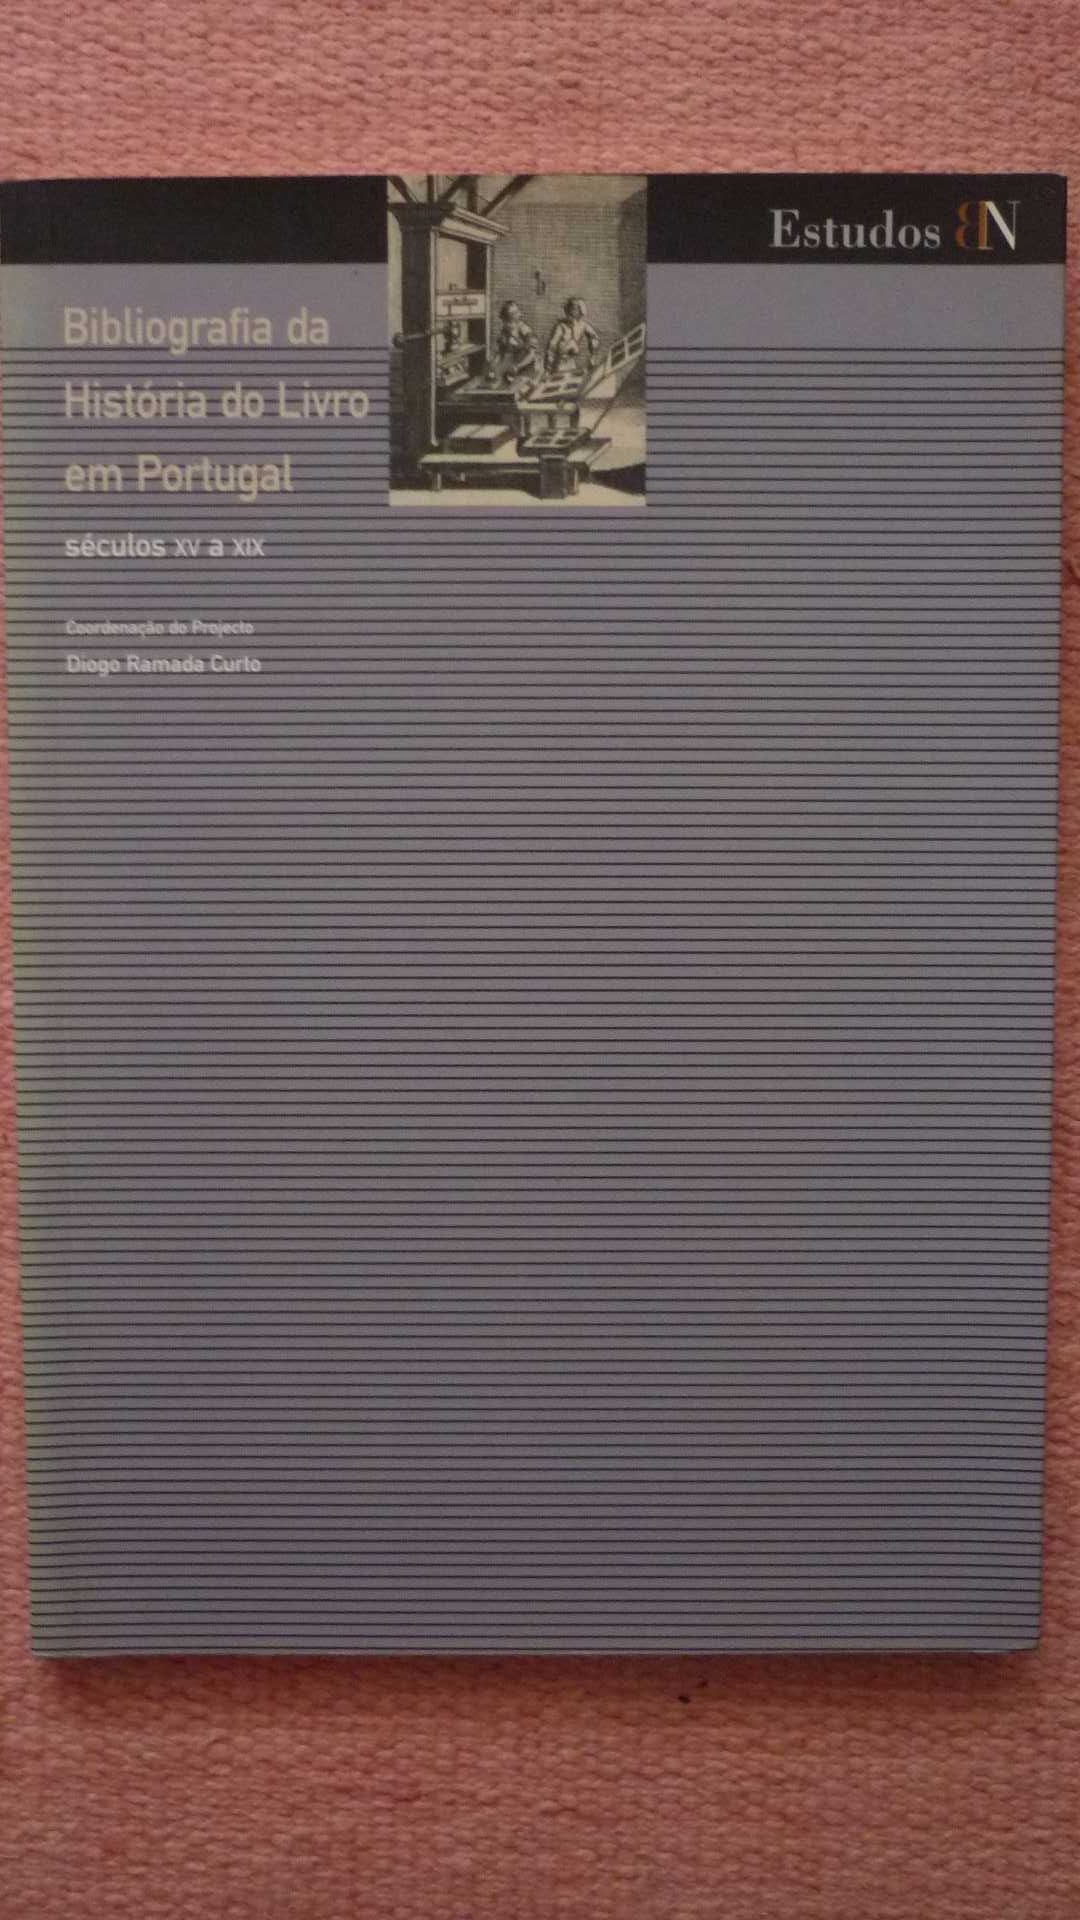 Bibliografia da História do Livro em Portugal, D. R. Curto